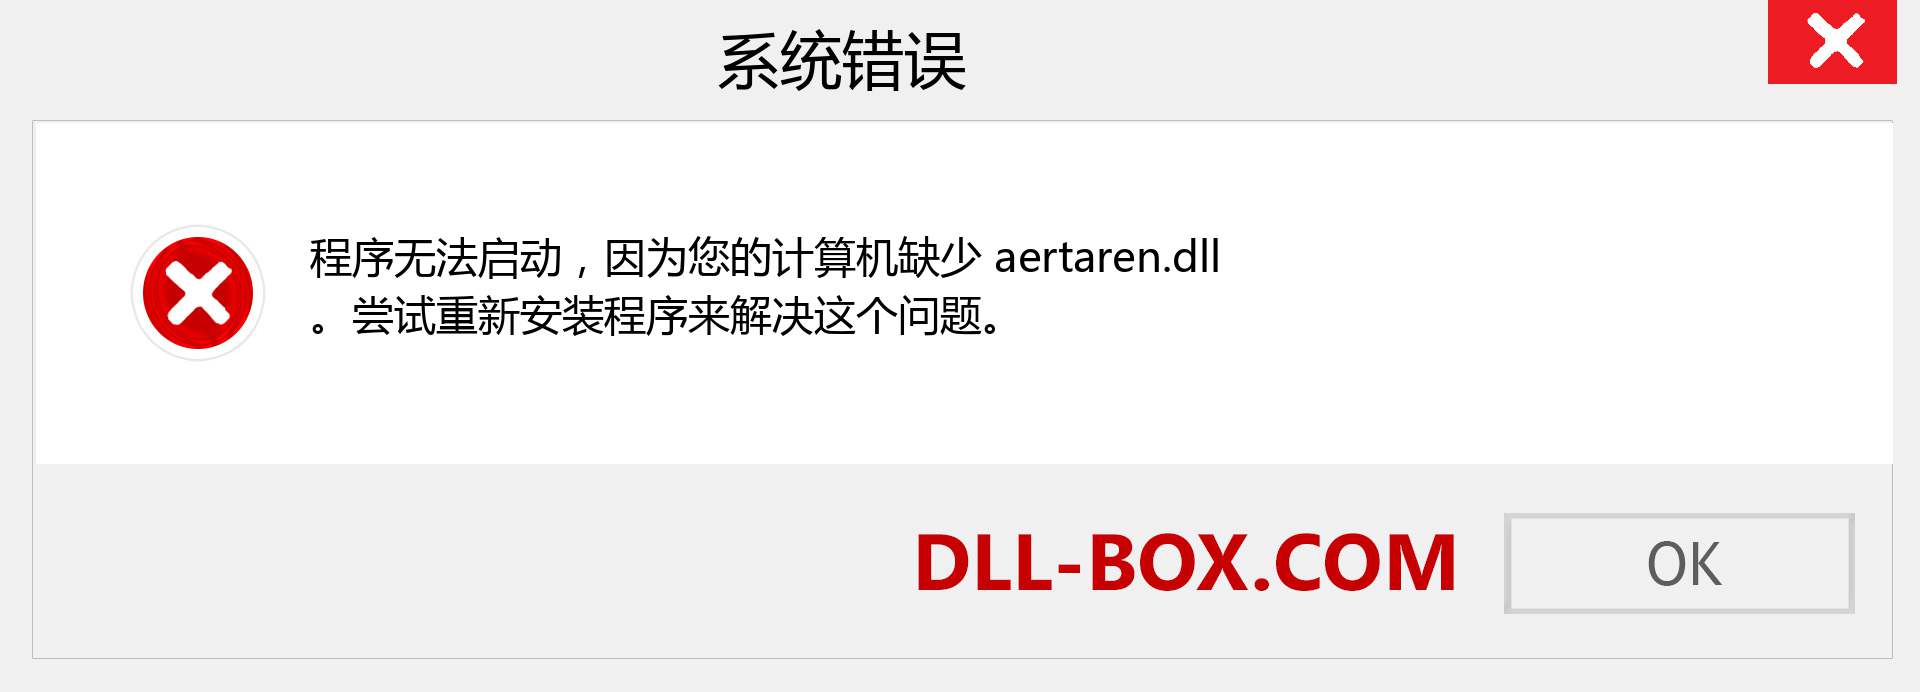 aertaren.dll 文件丢失？。 适用于 Windows 7、8、10 的下载 - 修复 Windows、照片、图像上的 aertaren dll 丢失错误